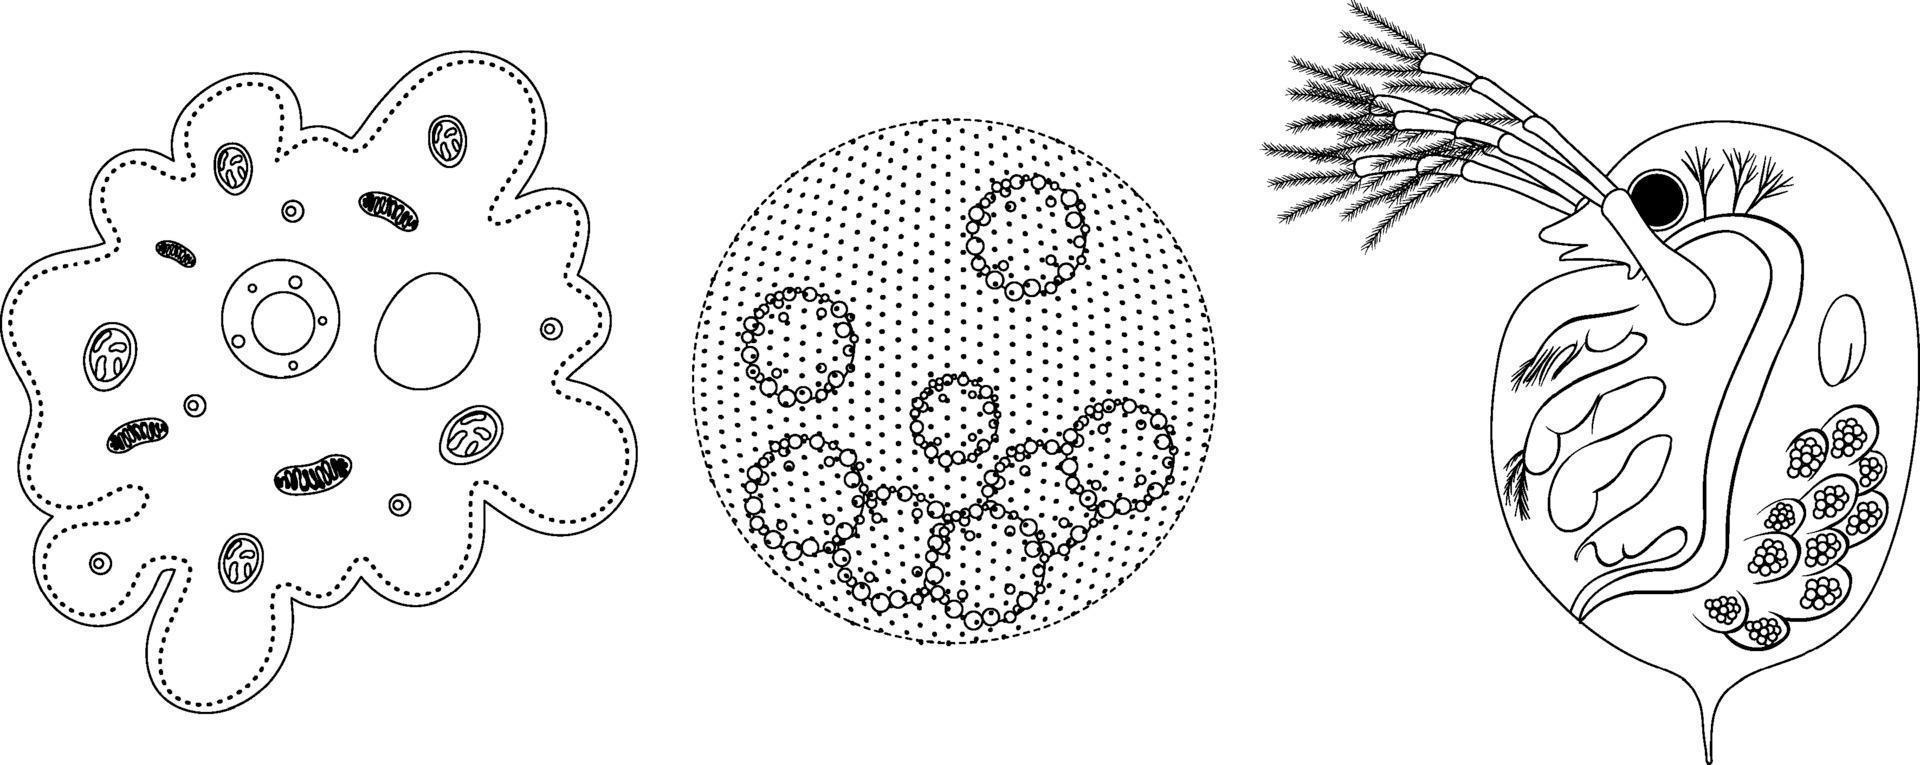 conjunto de organismo unicelular em doodle isolado no fundo branco vetor